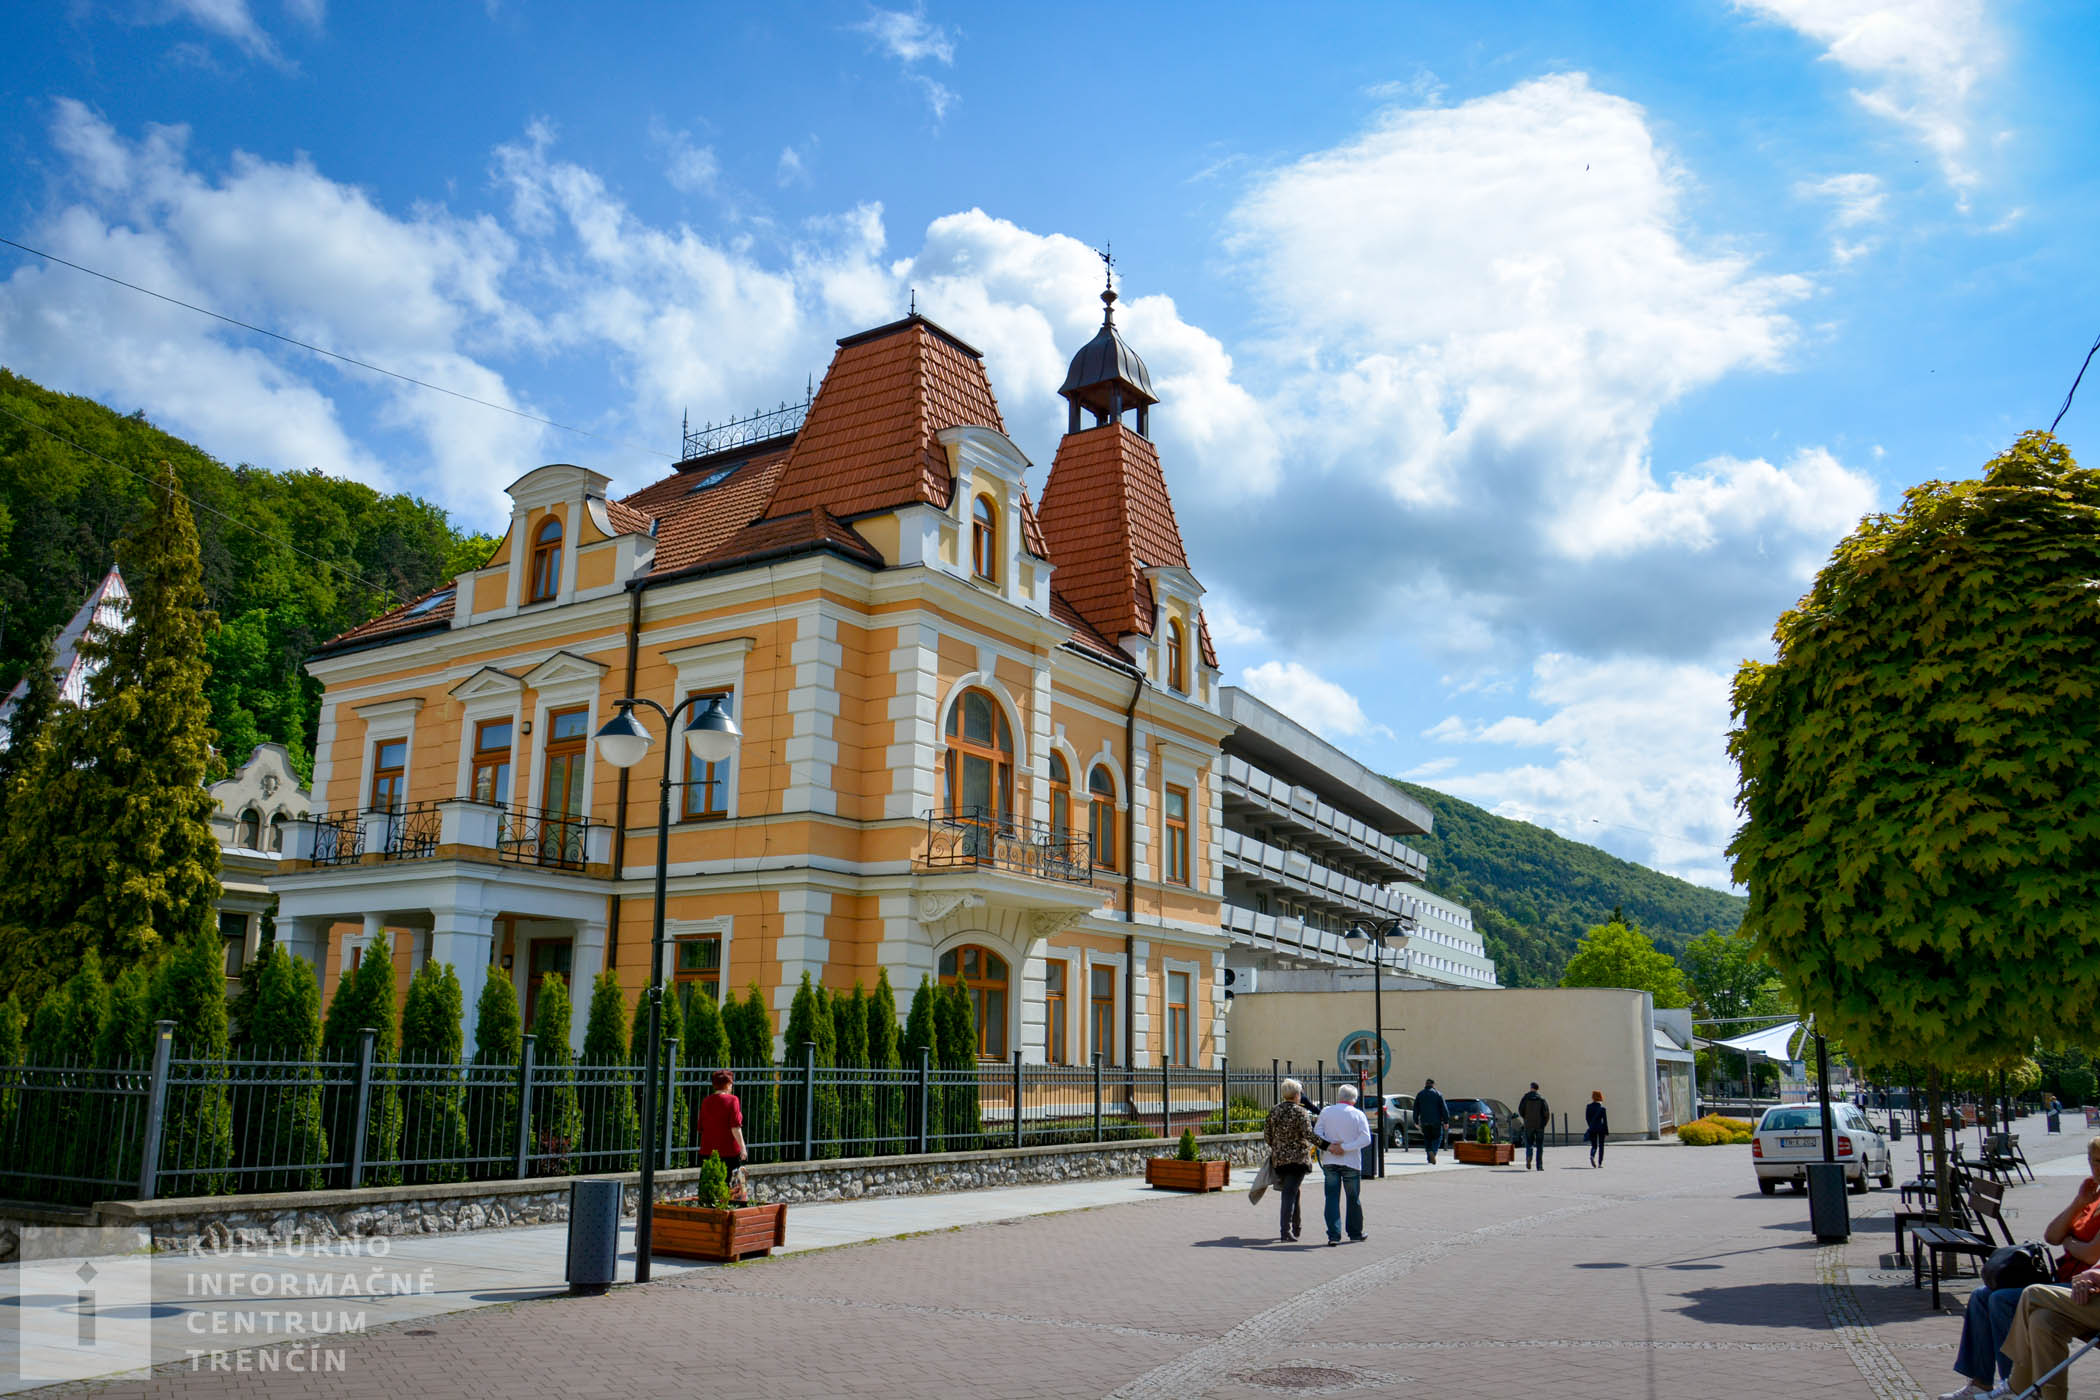 Kúpeľné mesto Trenčianske Teplice sa nachádza v nadmorskej výške 272 m n.m.